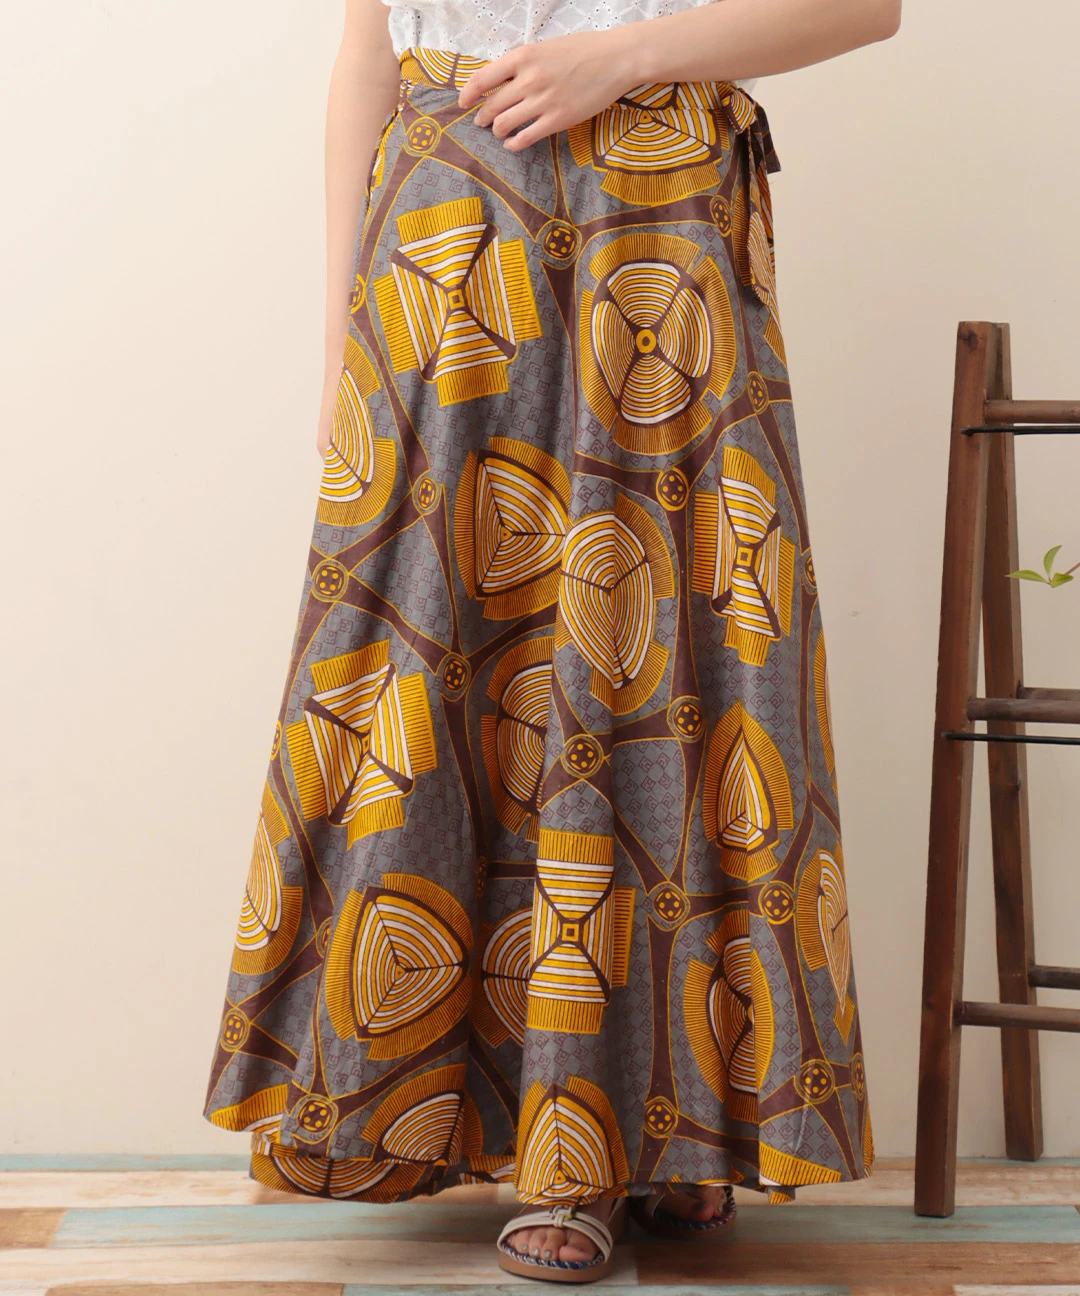 Shanti Shanti アフリカンプレーンラップスカート【WEB限定】